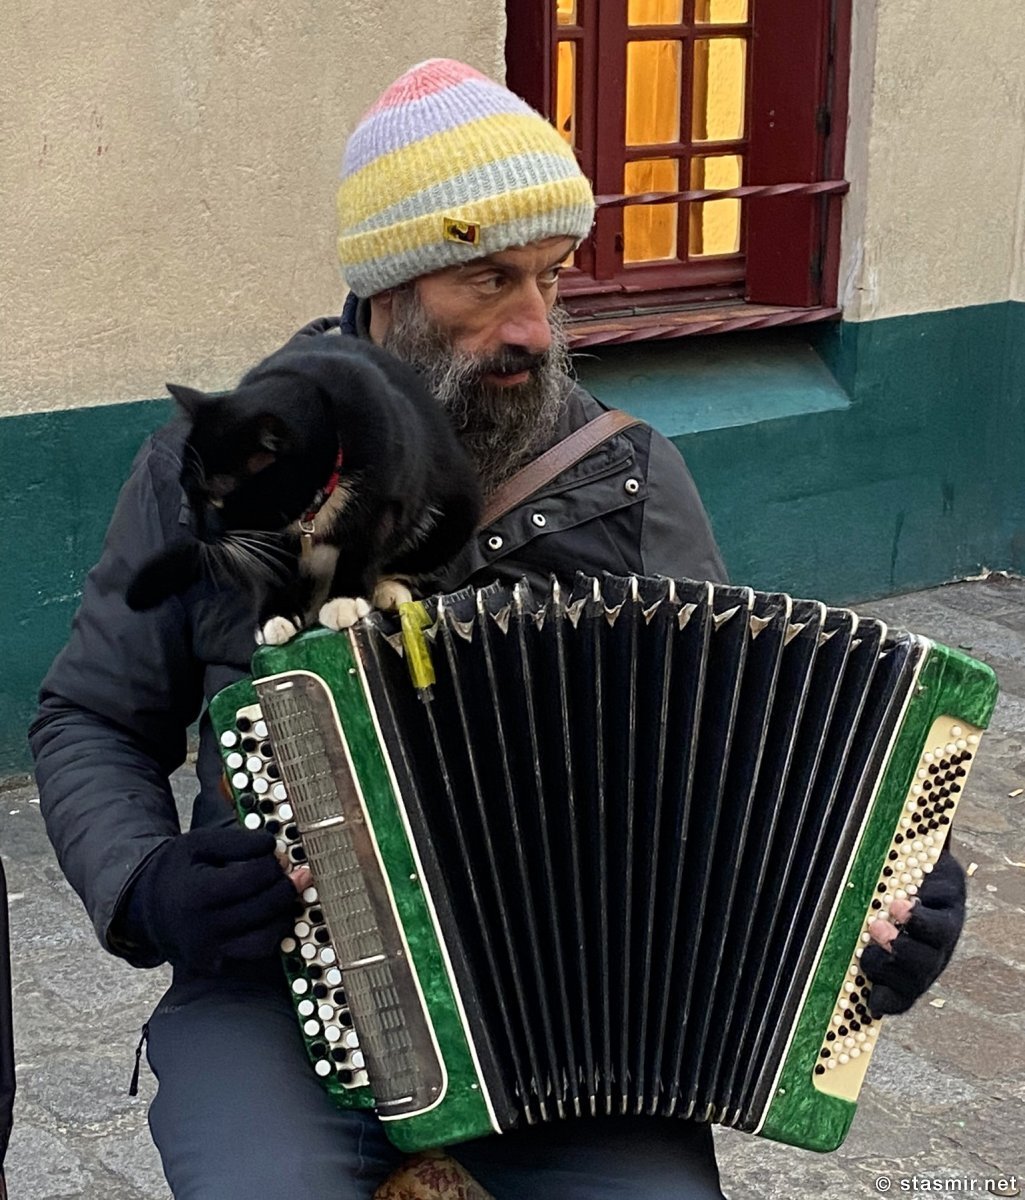 Уличный музыкант с котом на Монмартре, Париж, фото Стасмир, photo Stasmir